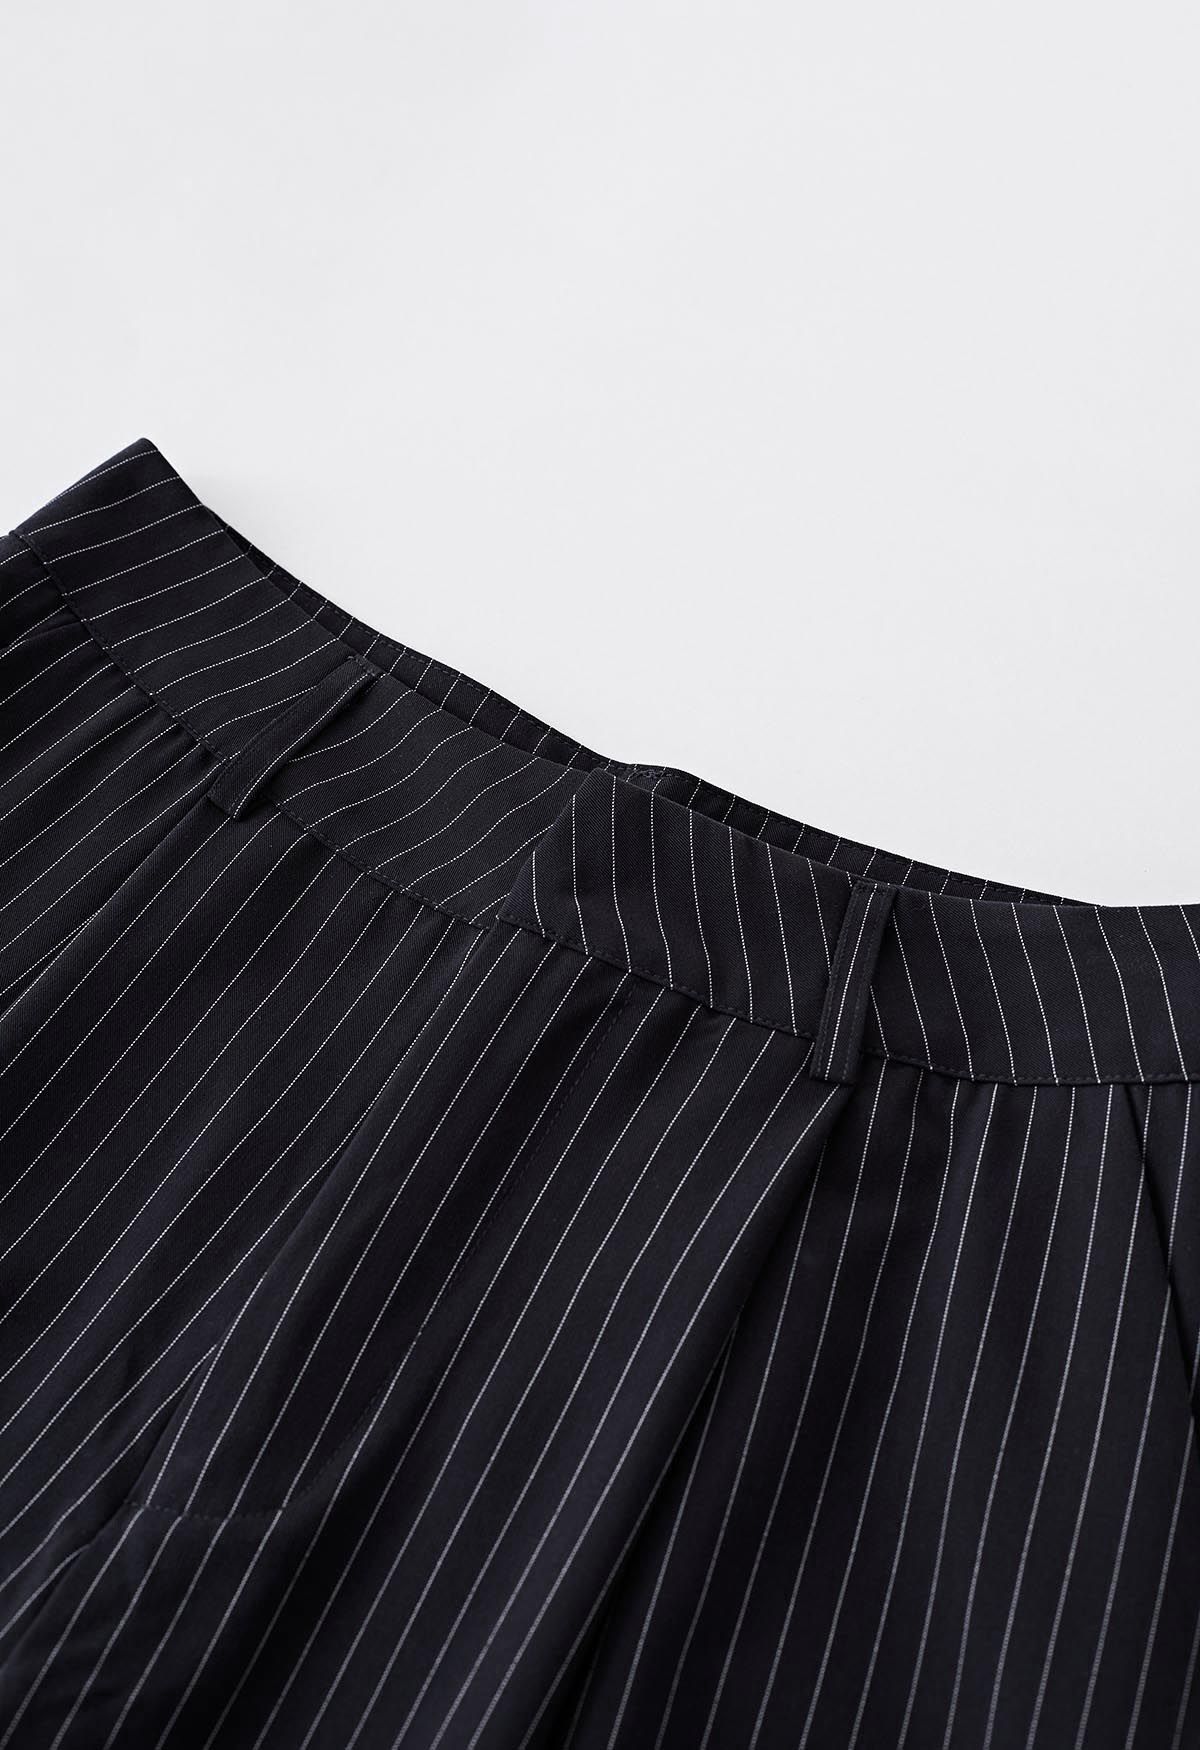 Pantalones rectos de rayas verticales en negro